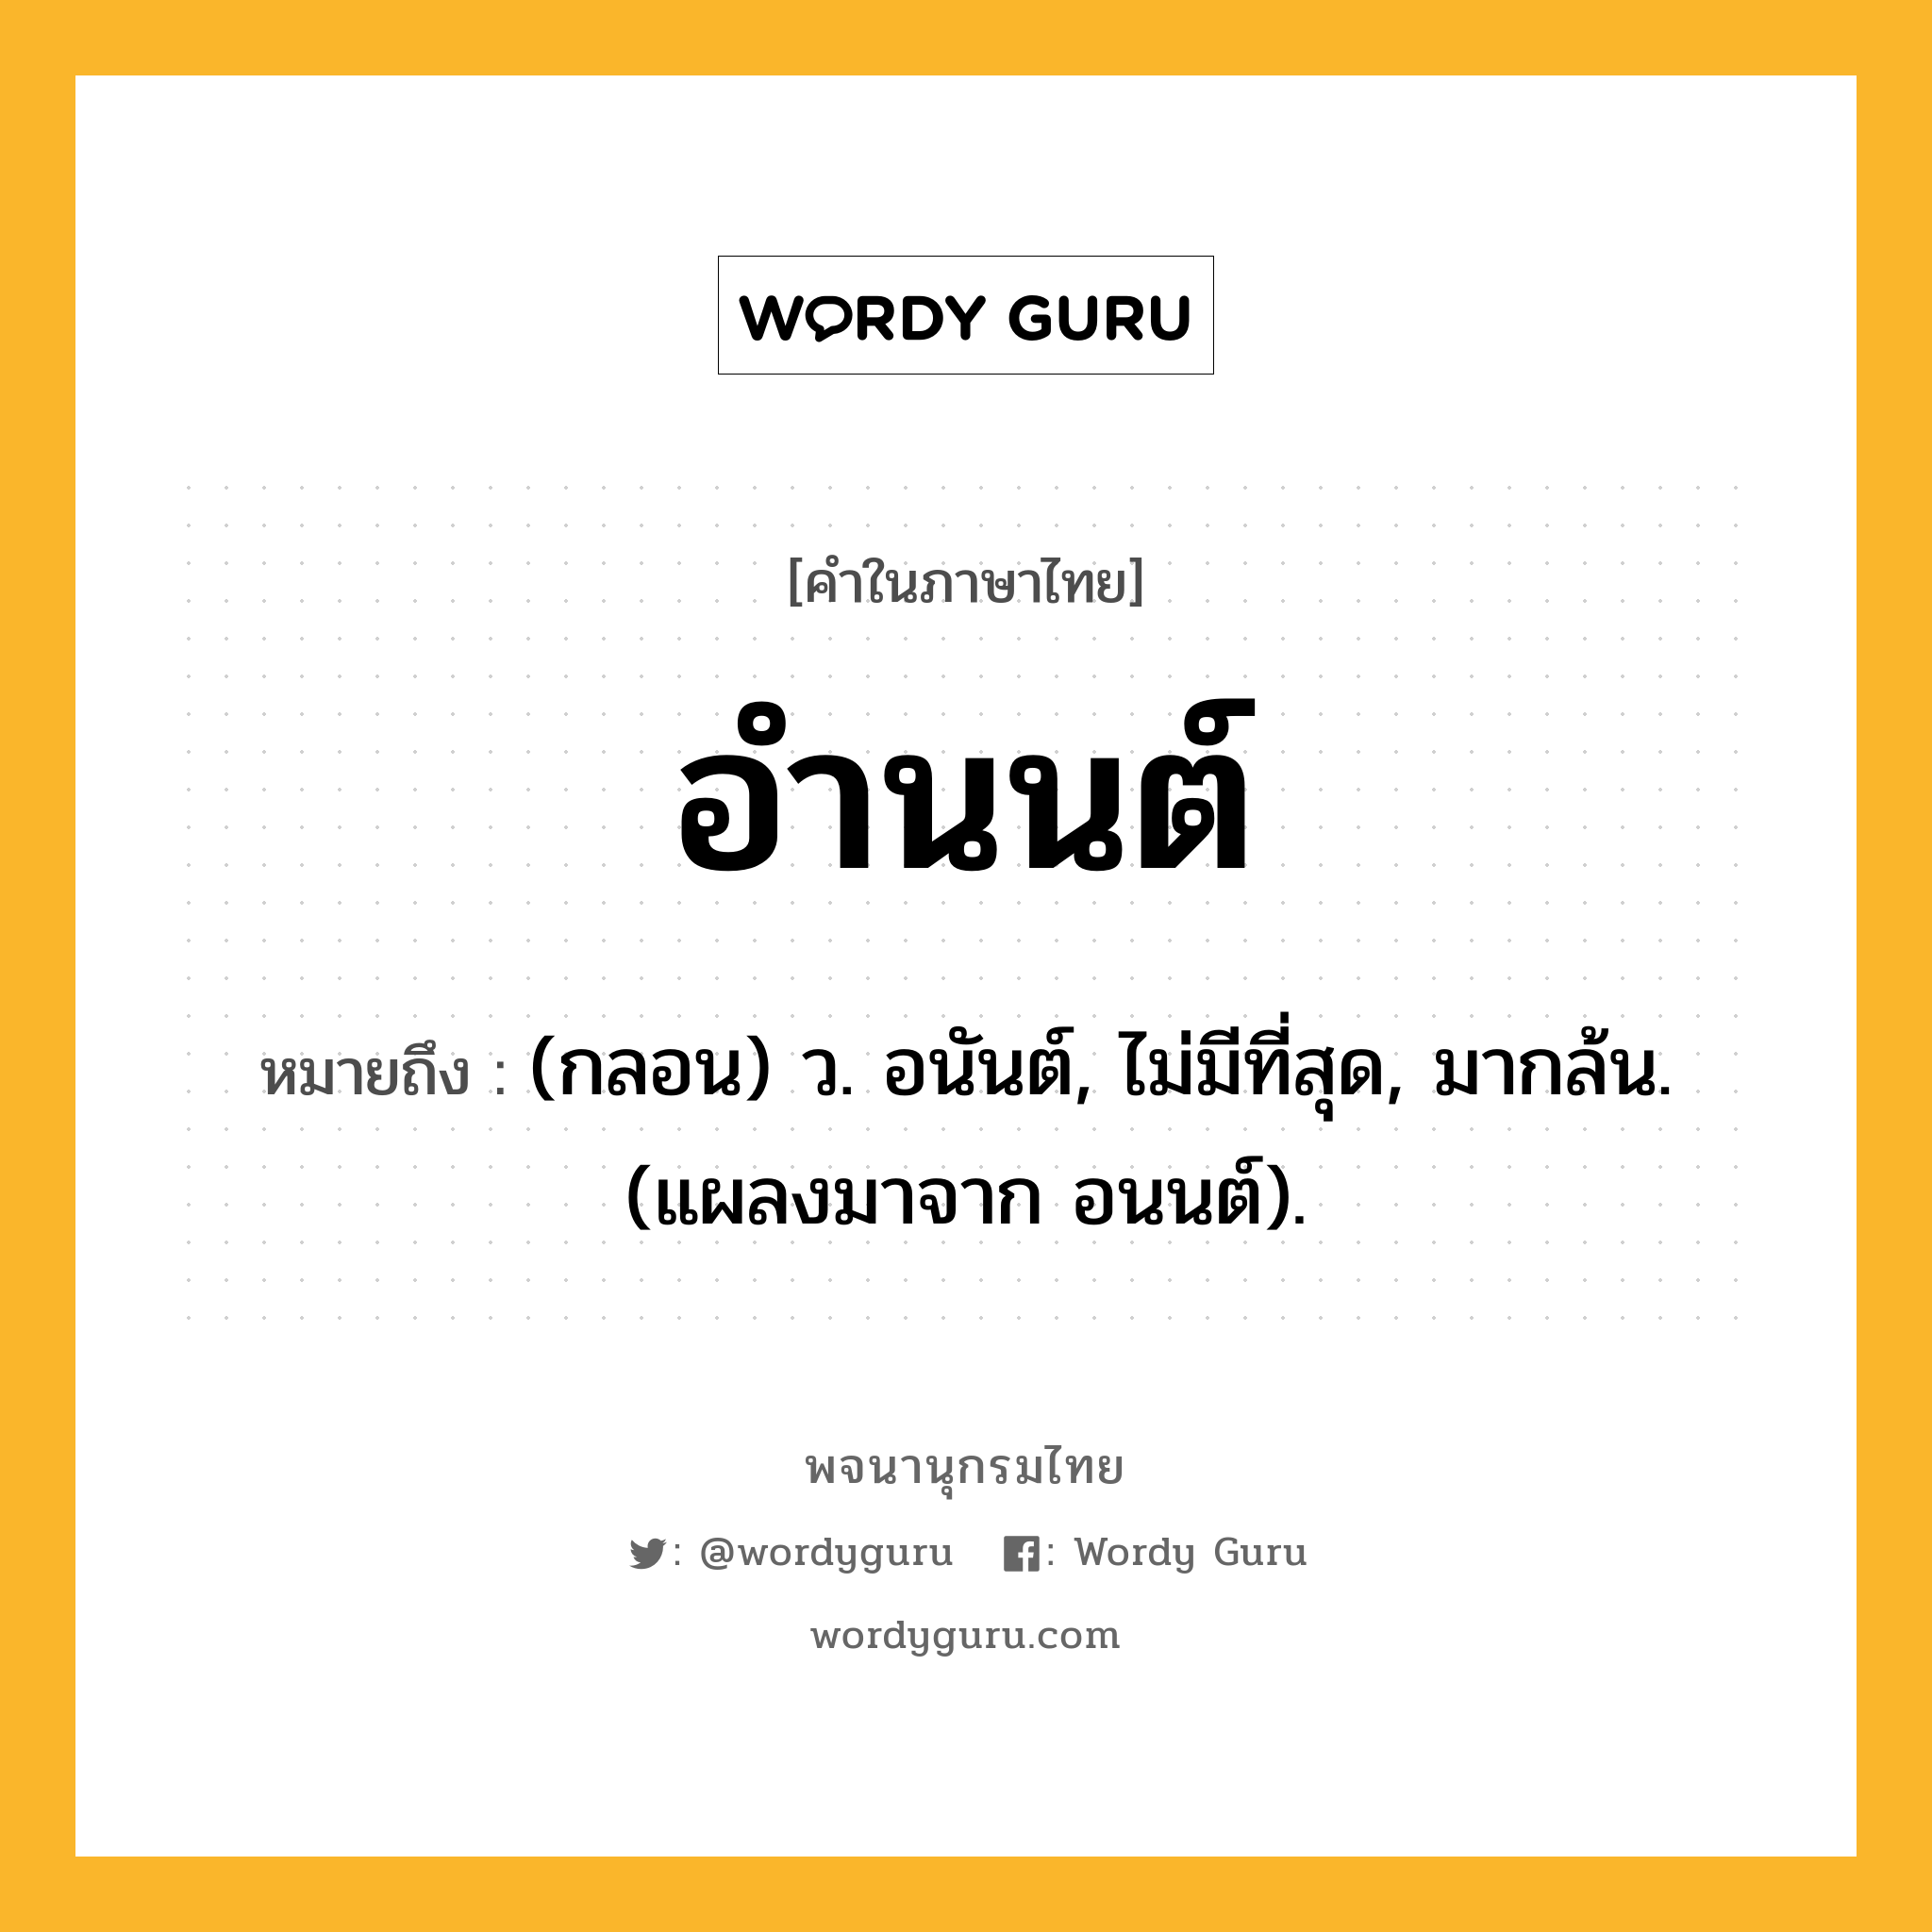 อำนนต์ ความหมาย หมายถึงอะไร?, คำในภาษาไทย อำนนต์ หมายถึง (กลอน) ว. อนันต์, ไม่มีที่สุด, มากล้น. (แผลงมาจาก อนนต์).